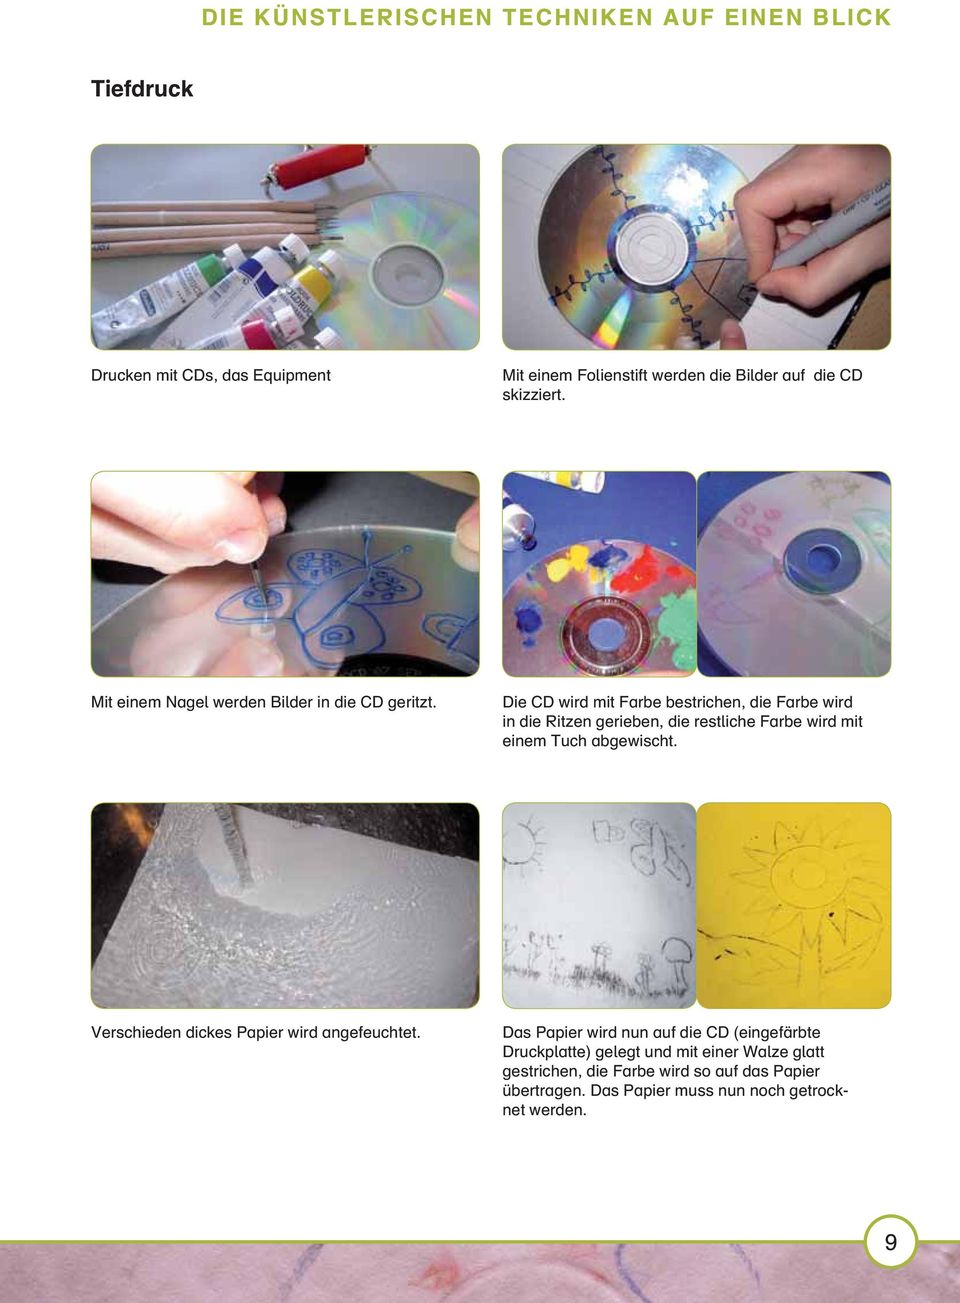 Die CD wird mit Farbe bestrichen, die Farbe wird in die Ritzen gerieben, die restliche Farbe wird mit einem Tuch abgewischt.